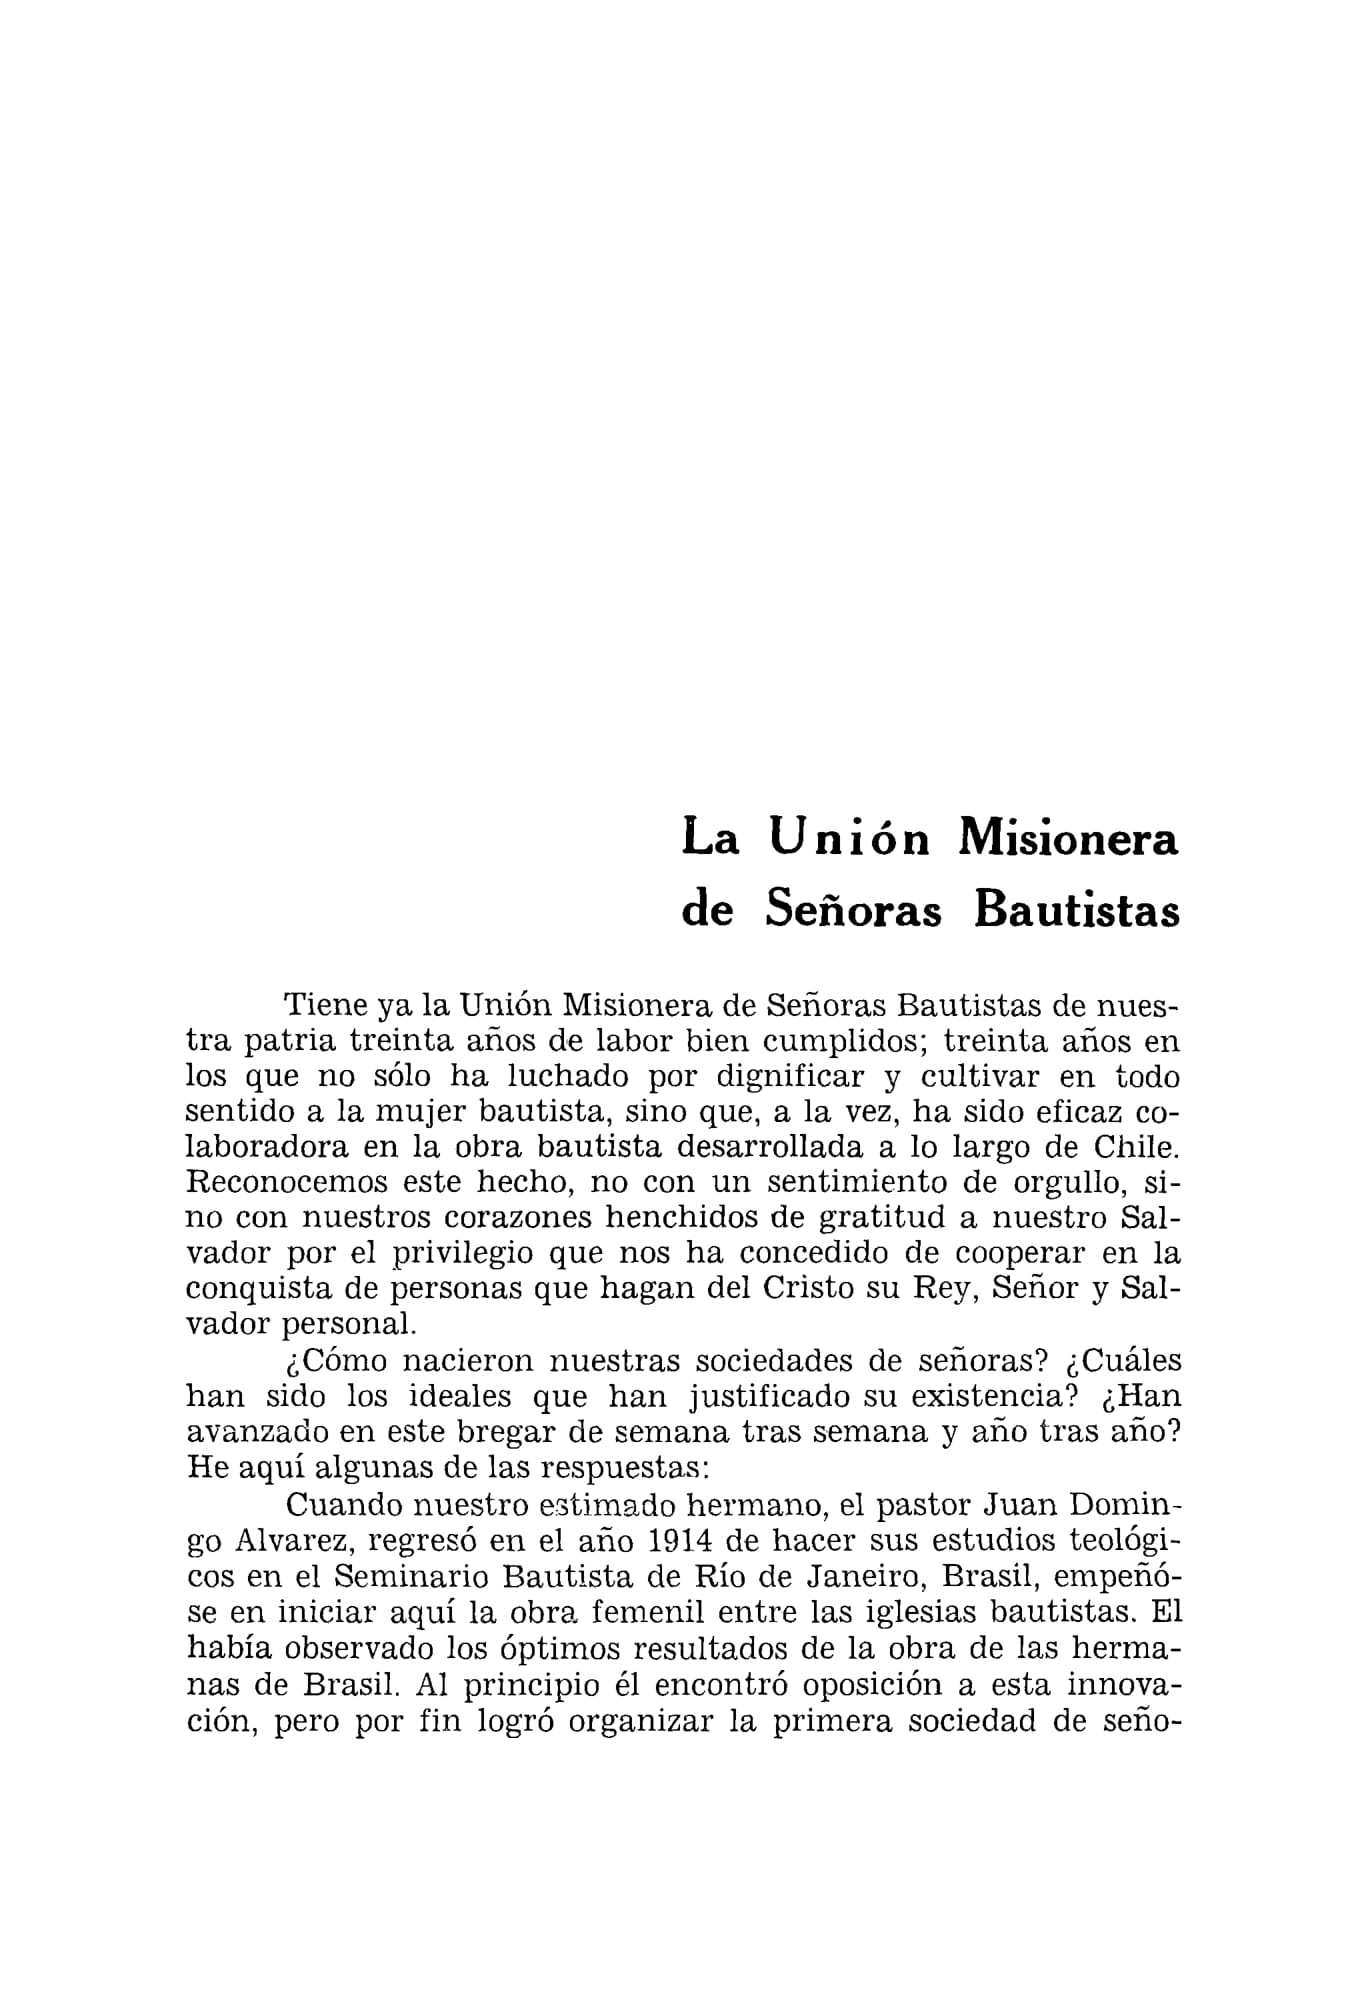 Convención de Chile aniversario 50 1908-1958-31.jpg